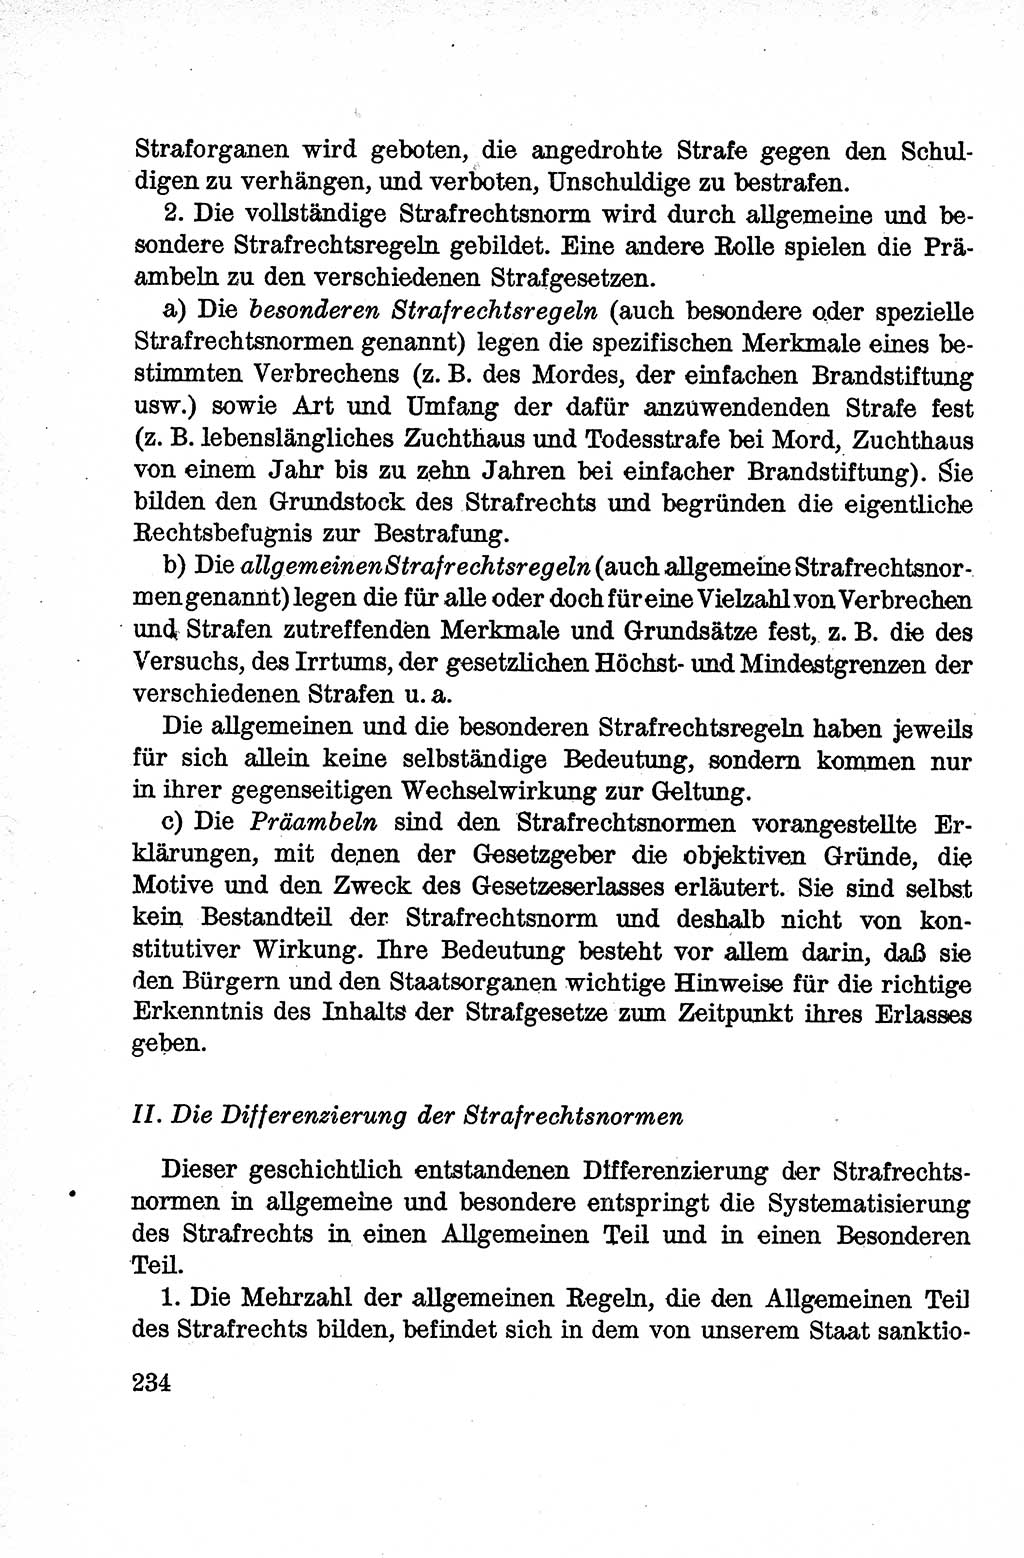 Lehrbuch des Strafrechts der Deutschen Demokratischen Republik (DDR), Allgemeiner Teil 1959, Seite 234 (Lb. Strafr. DDR AT 1959, S. 234)